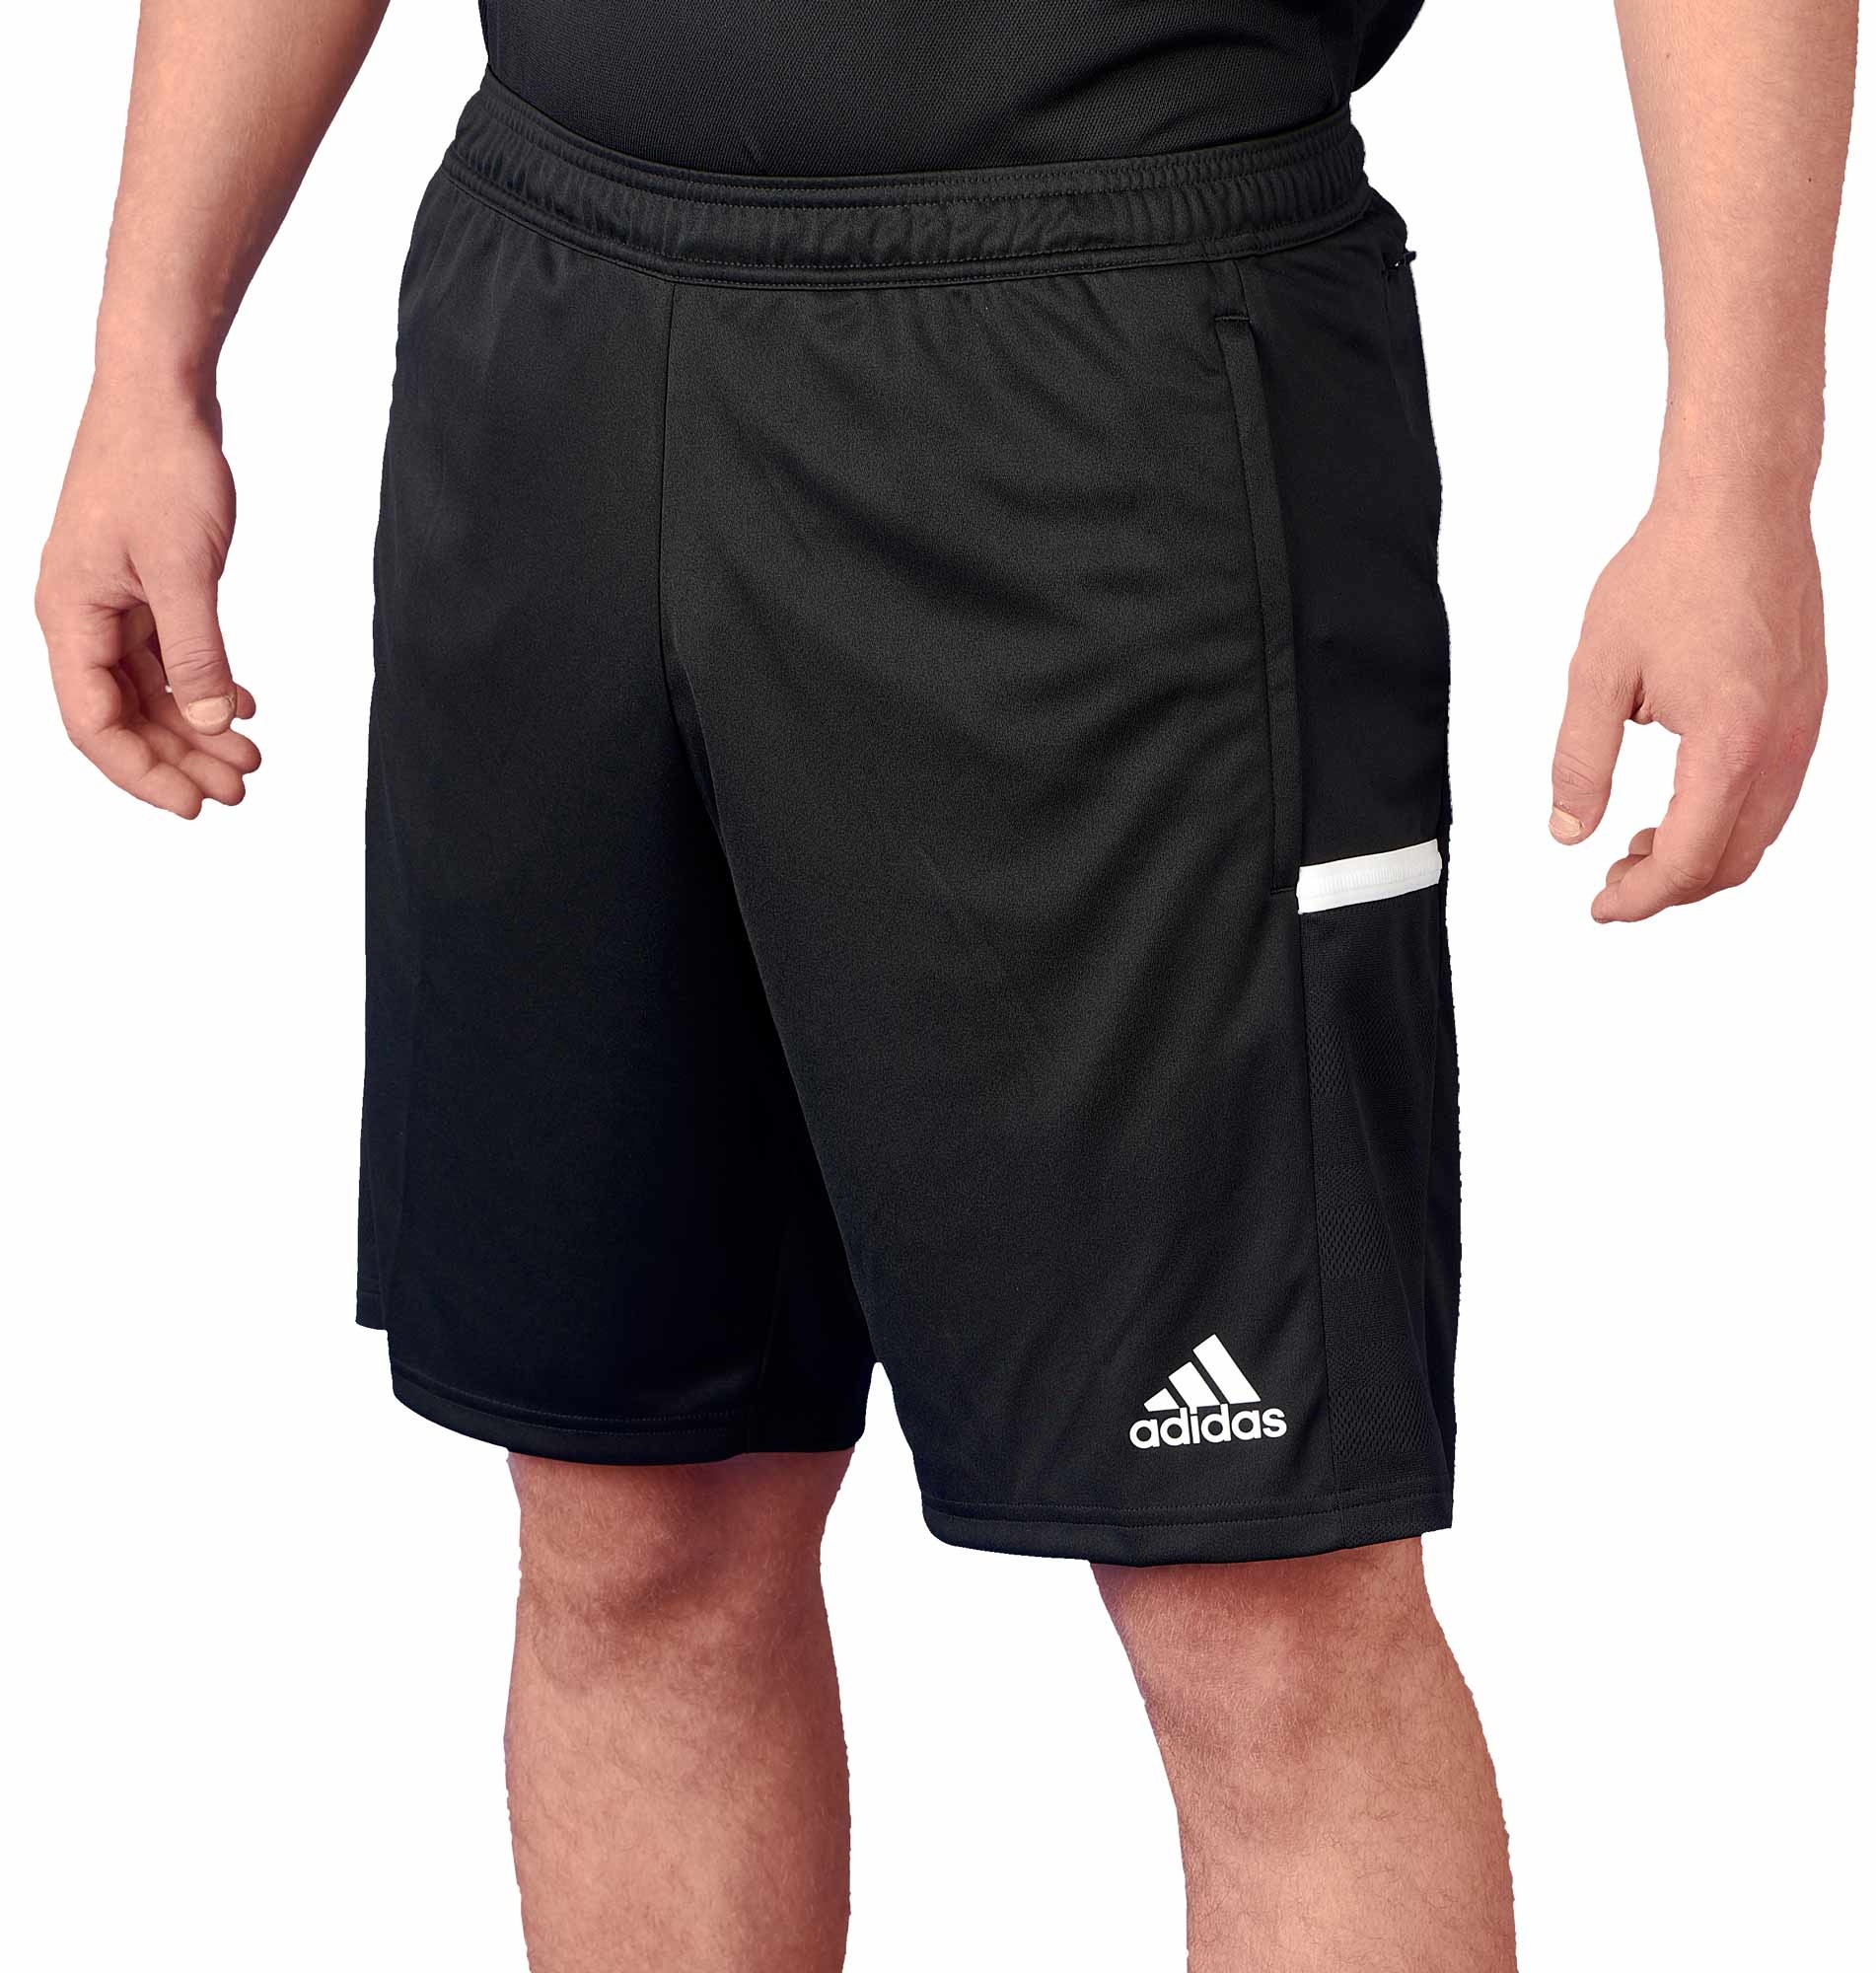 adidas 3 pocket shorts